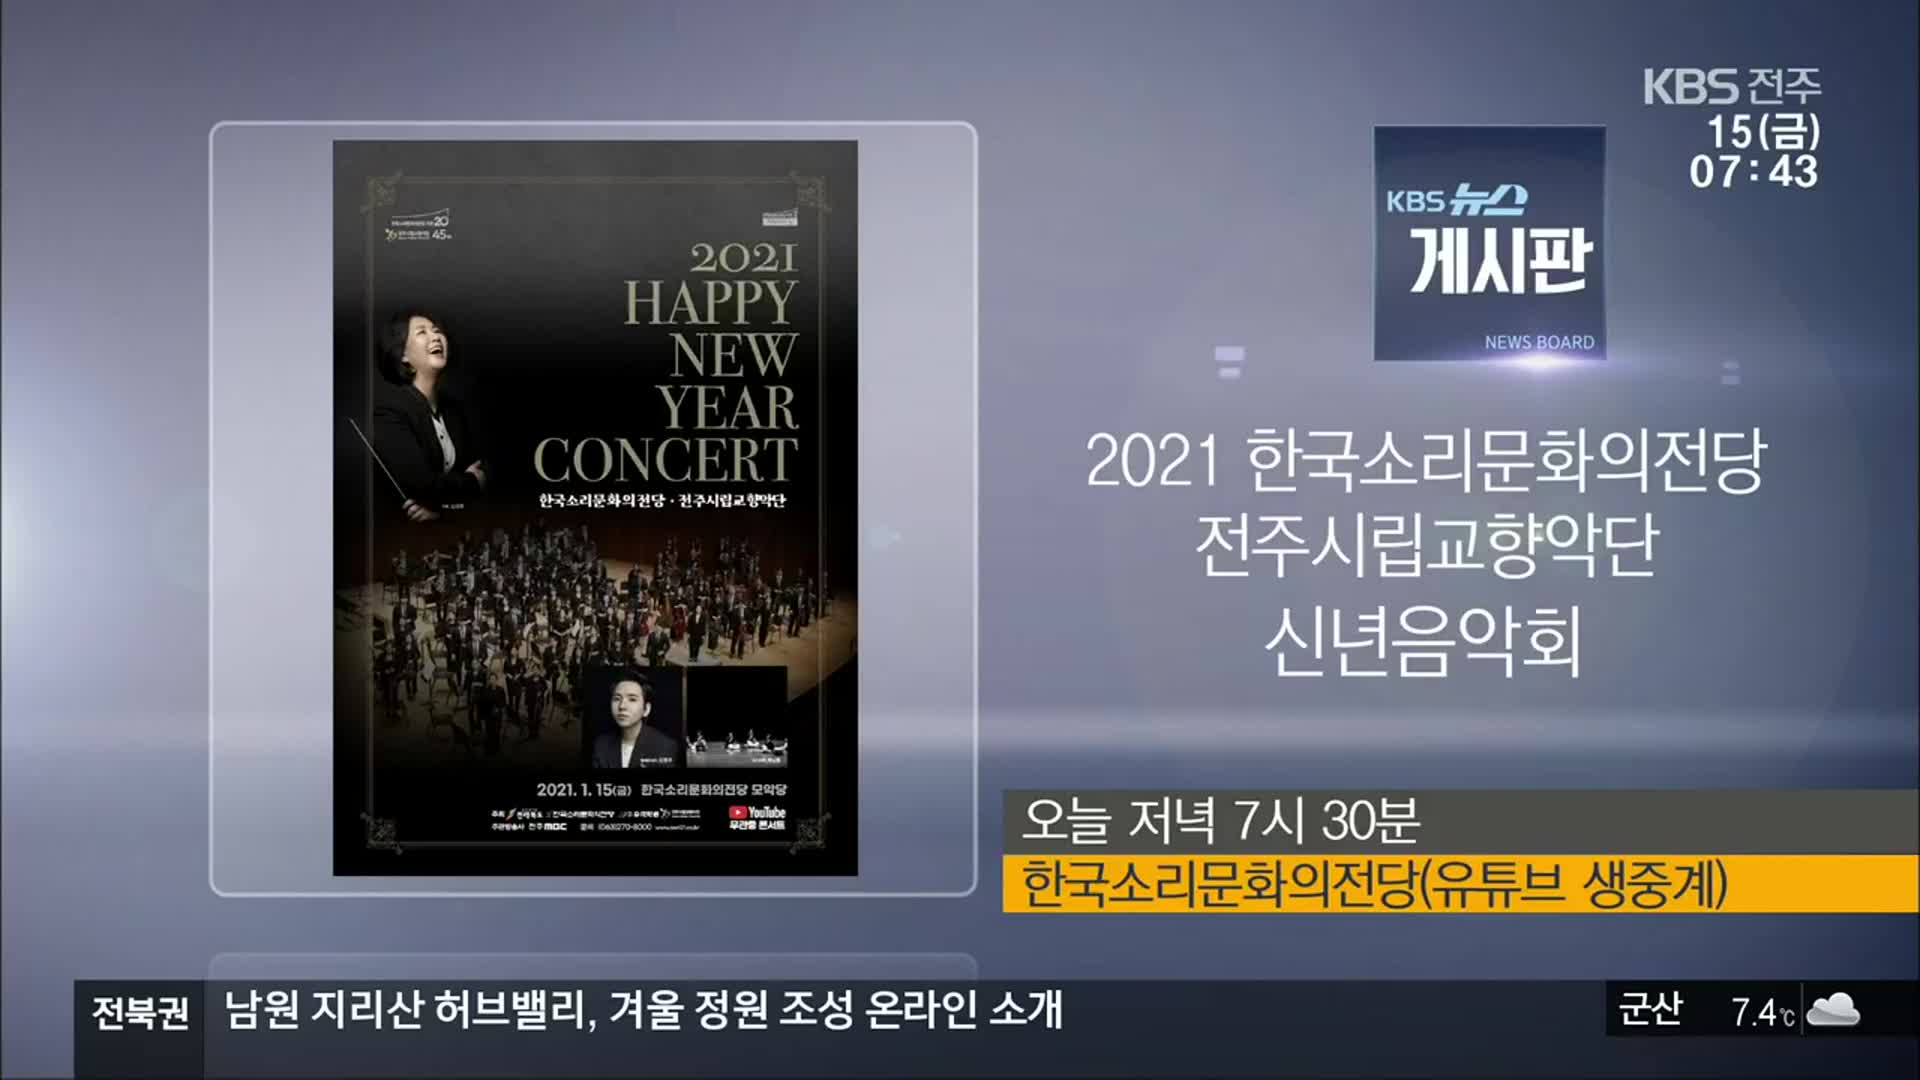 [게시판] 2021 한국소리문화의전당 전주시립교향악단 신년음악회 외